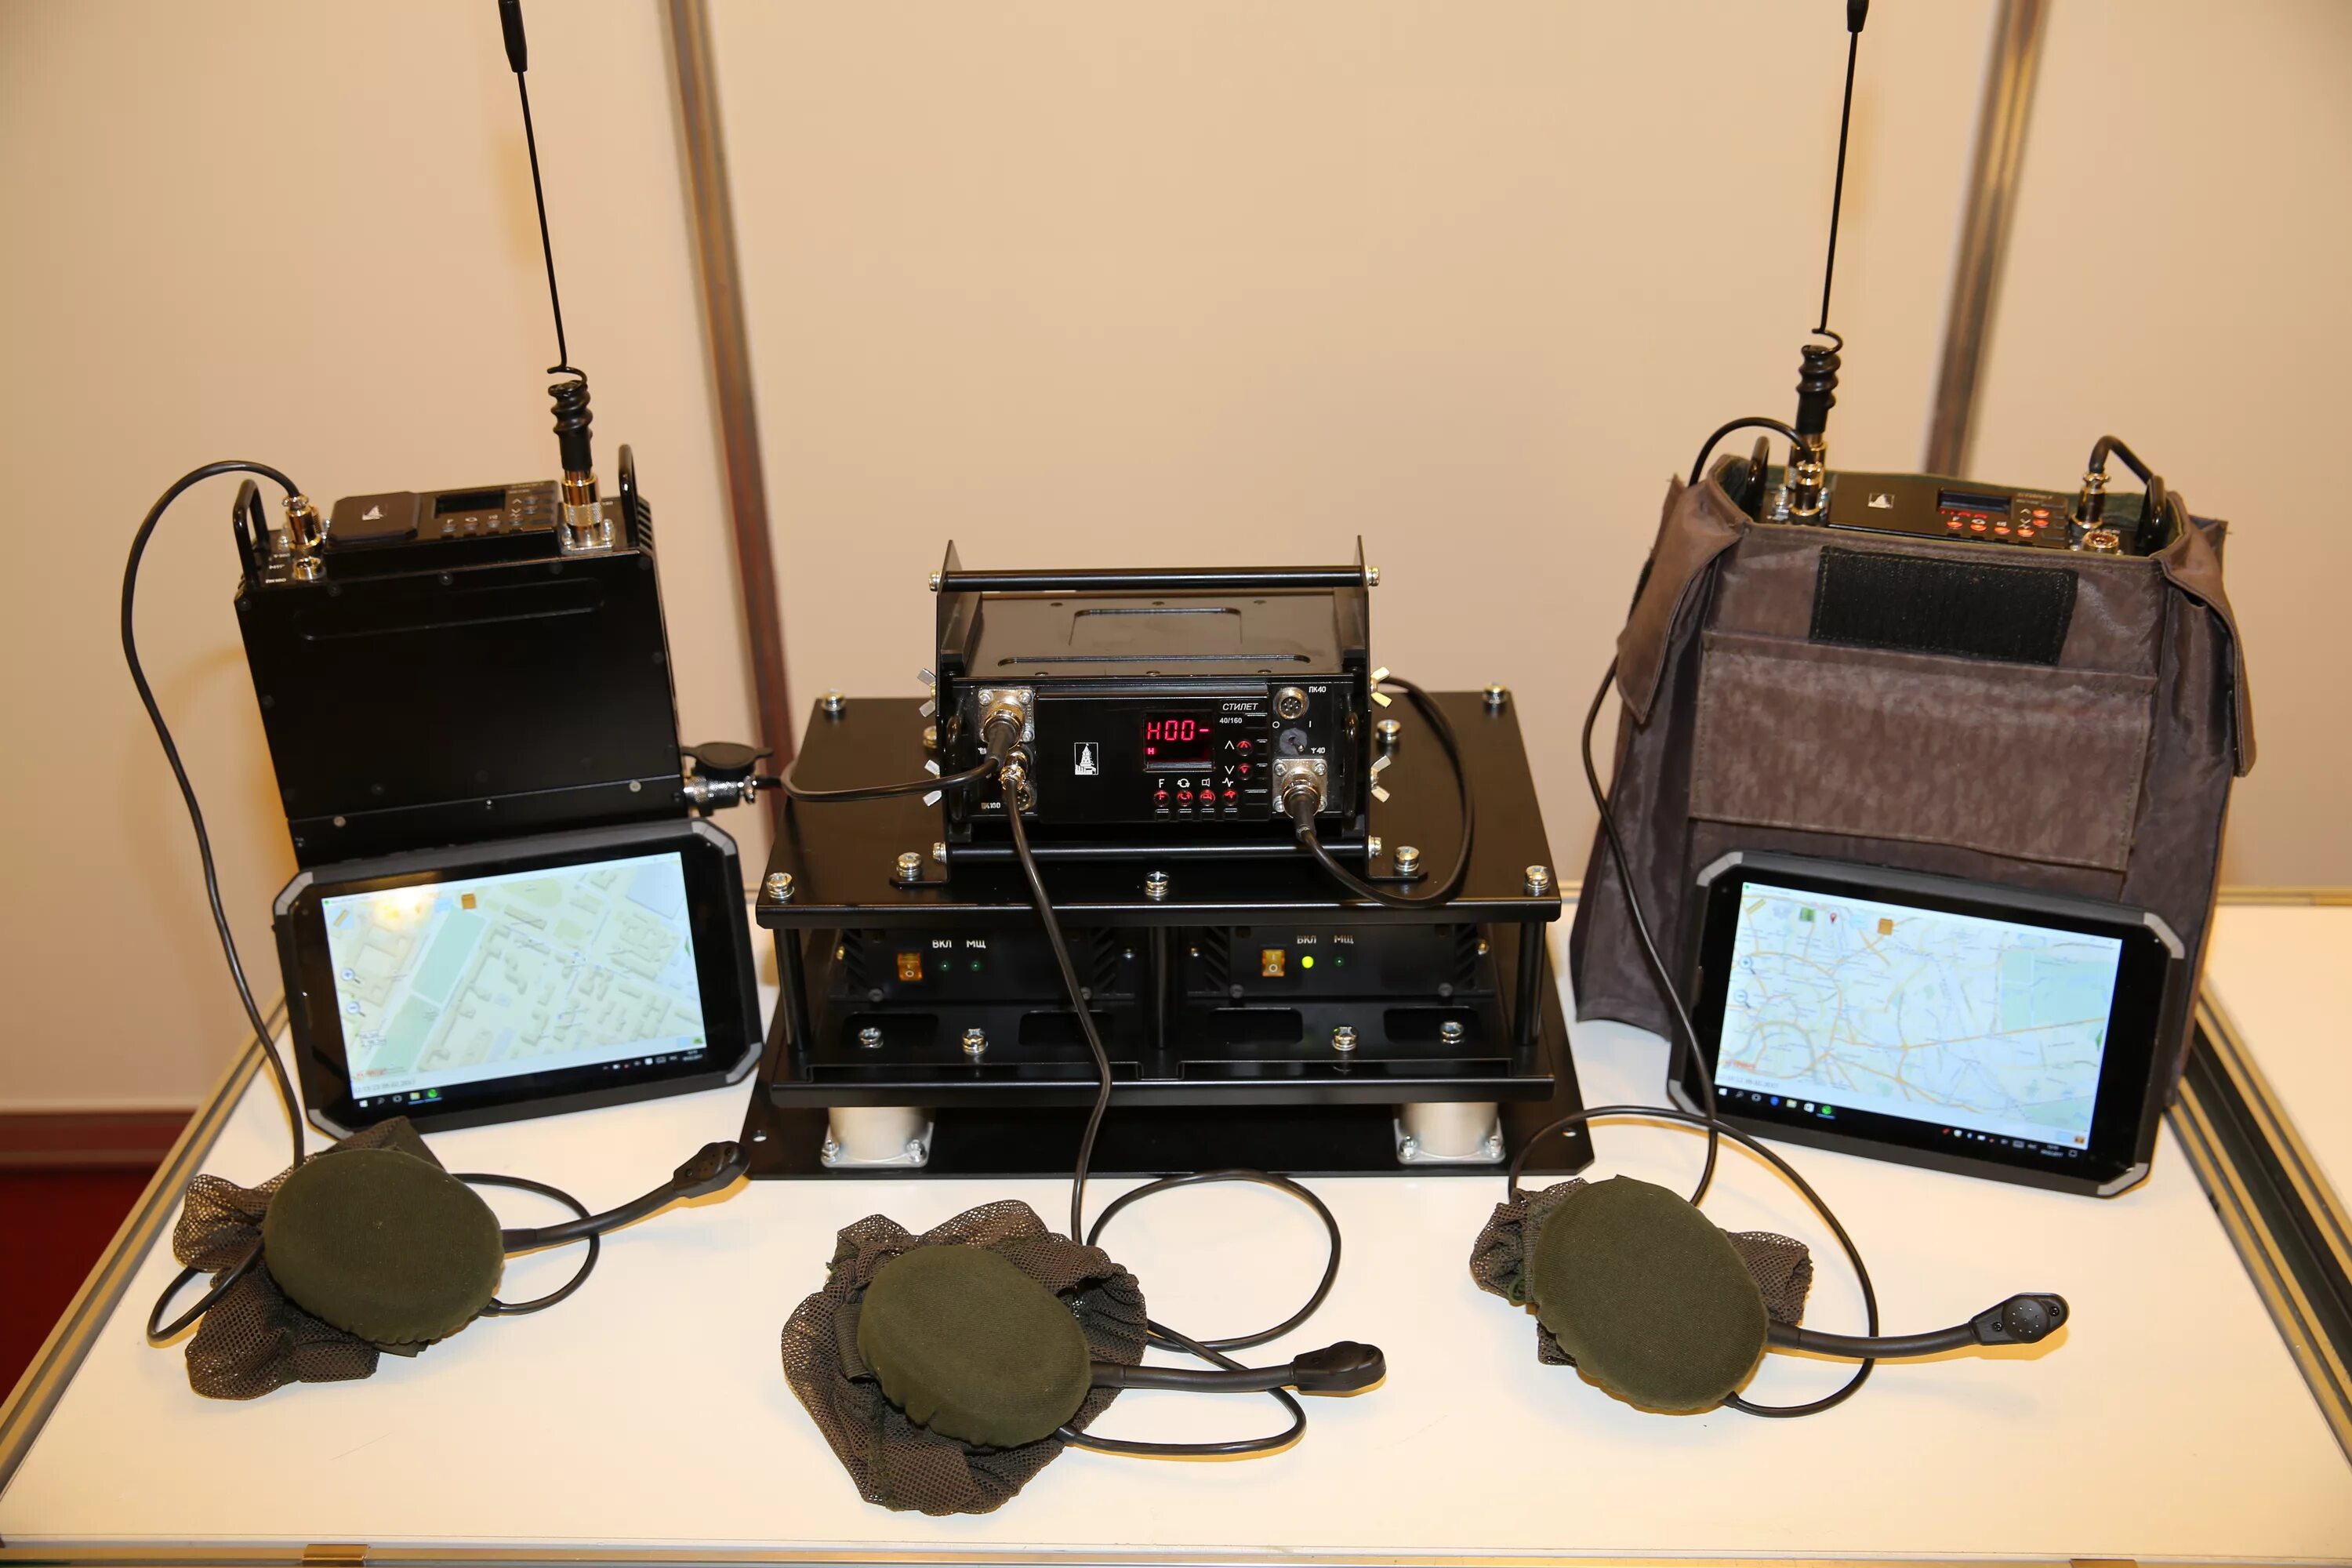 Радиостанция р-168-25у. Технические средства связи. Оборудование радиосвязи. Мобильный комплекс связи. Средства электросвязи